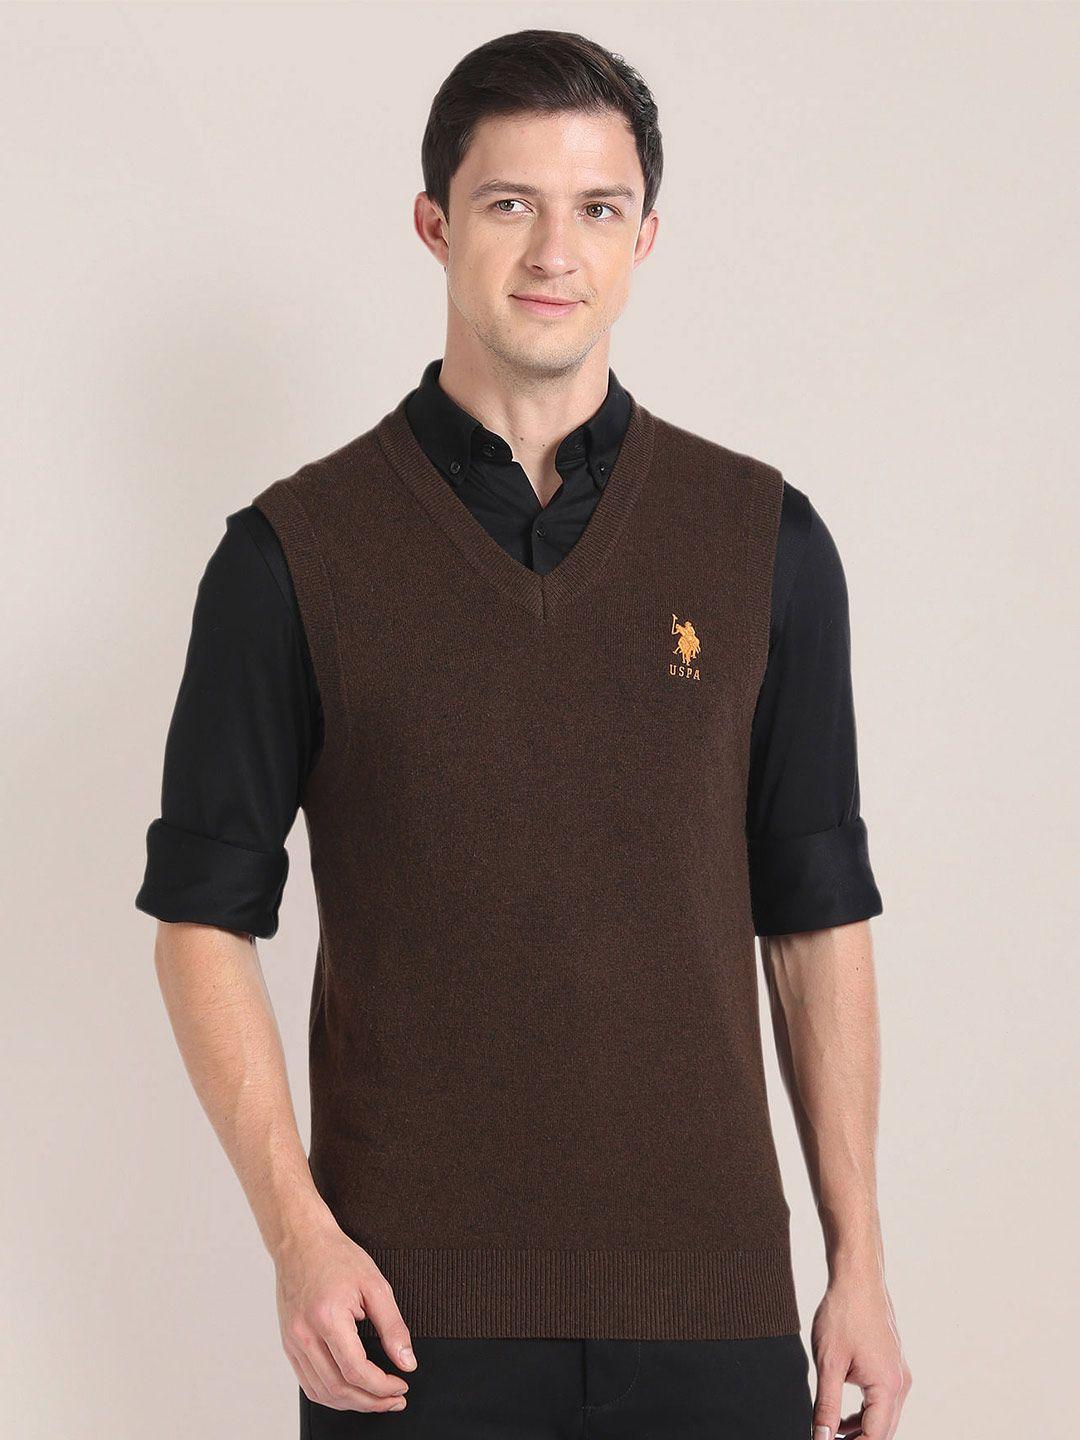 u.s. polo assn. v-neck sleeveless sweater vest